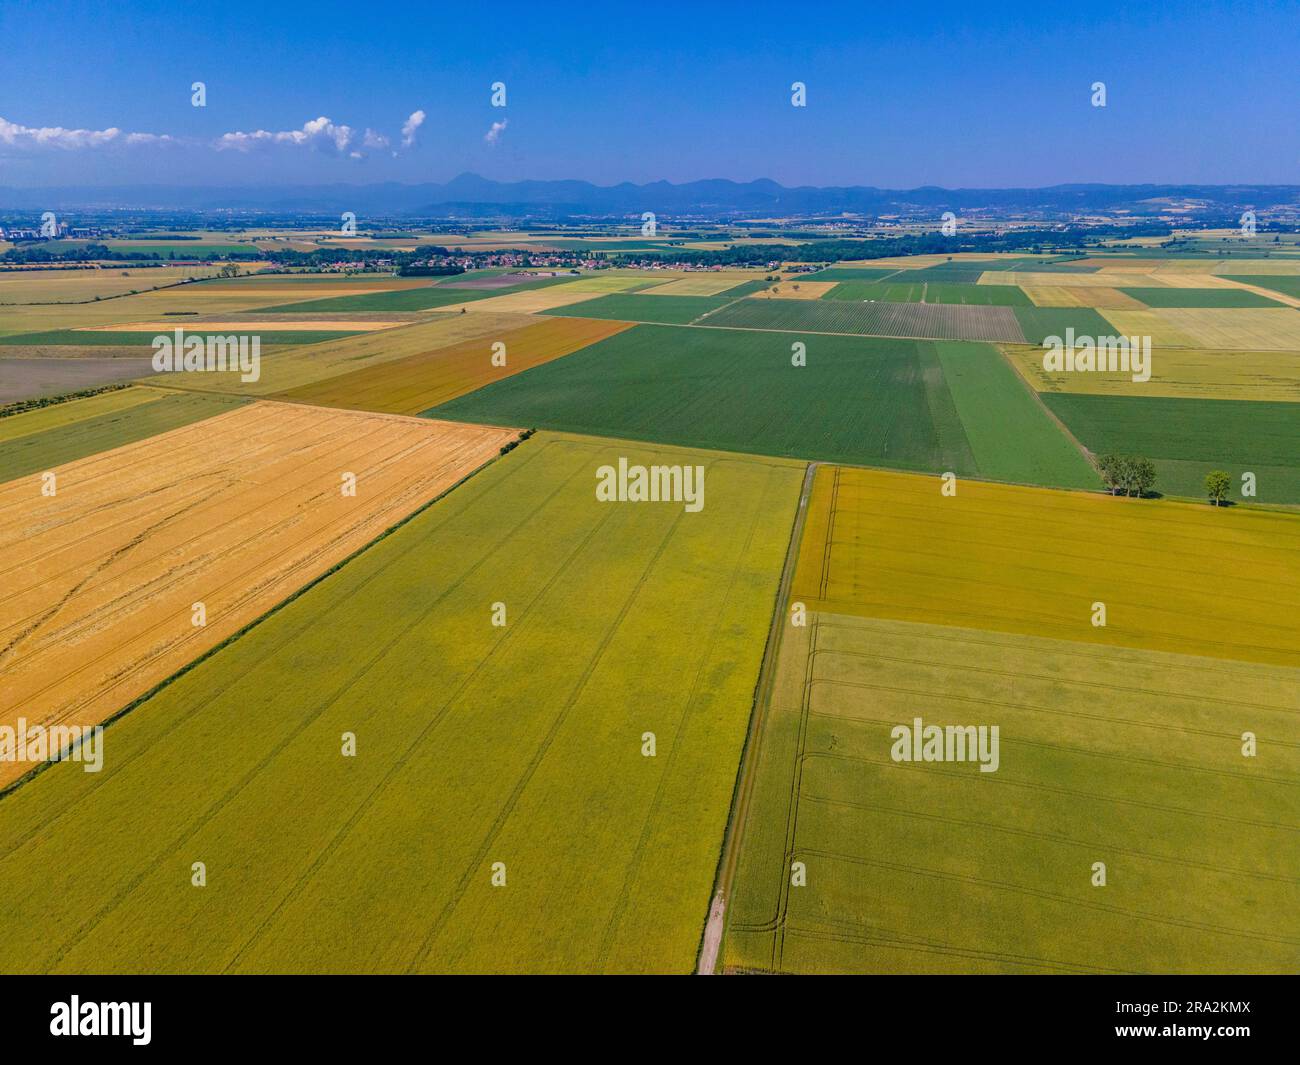 France, Puy de Dome, les Martres d'Artière, paysage agricole de la plaine de la Limagne, près de Riom, chaîne des Puys en arrière-plan (vue aérienne) Banque D'Images